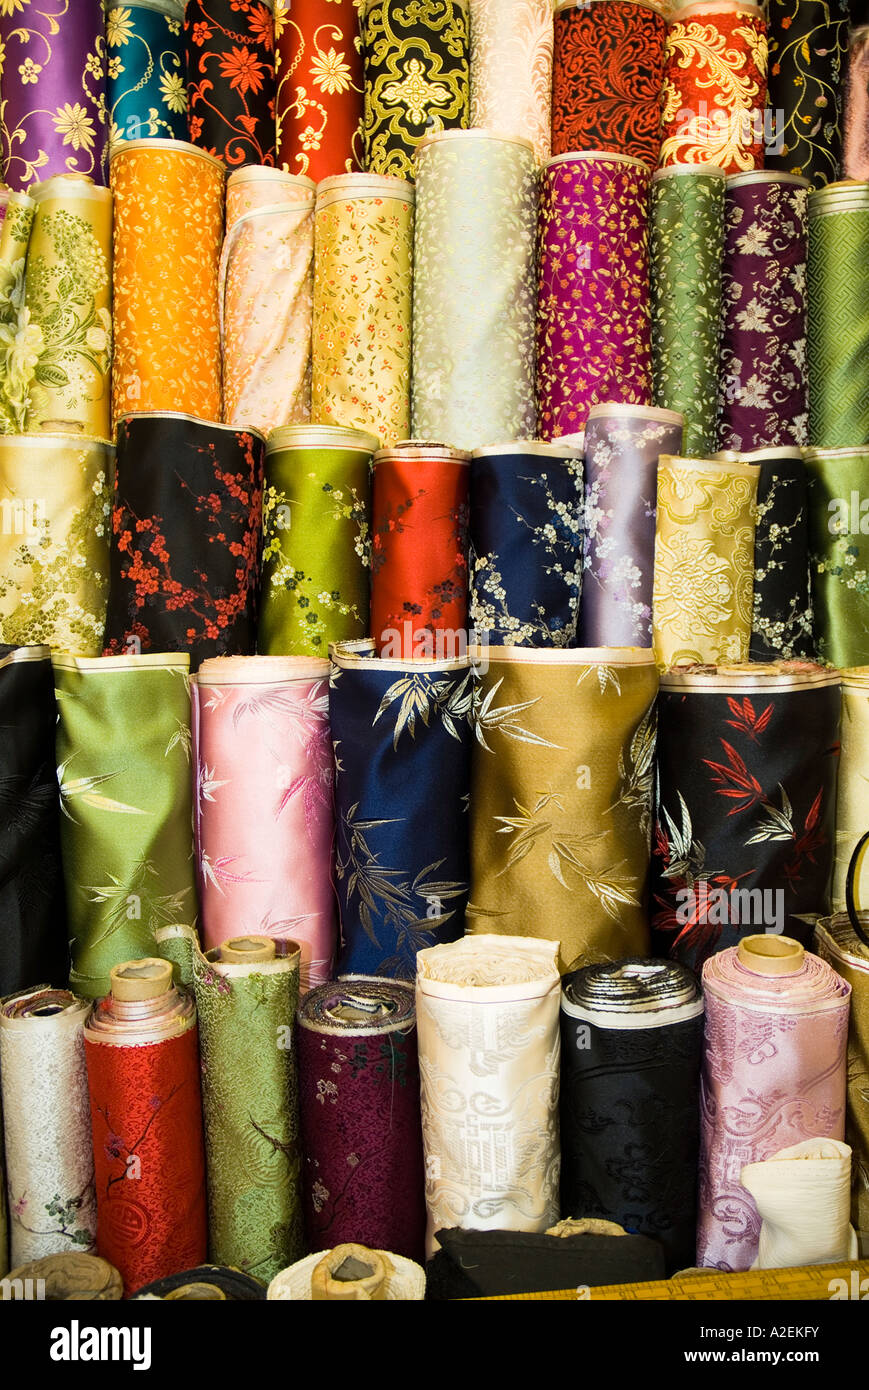 dh marché occidental SHEUNG WAN HONG KONG Chine soie matière magasin de marché clothe chinois rouleaux de tissu gros plan motifs de tissu Banque D'Images